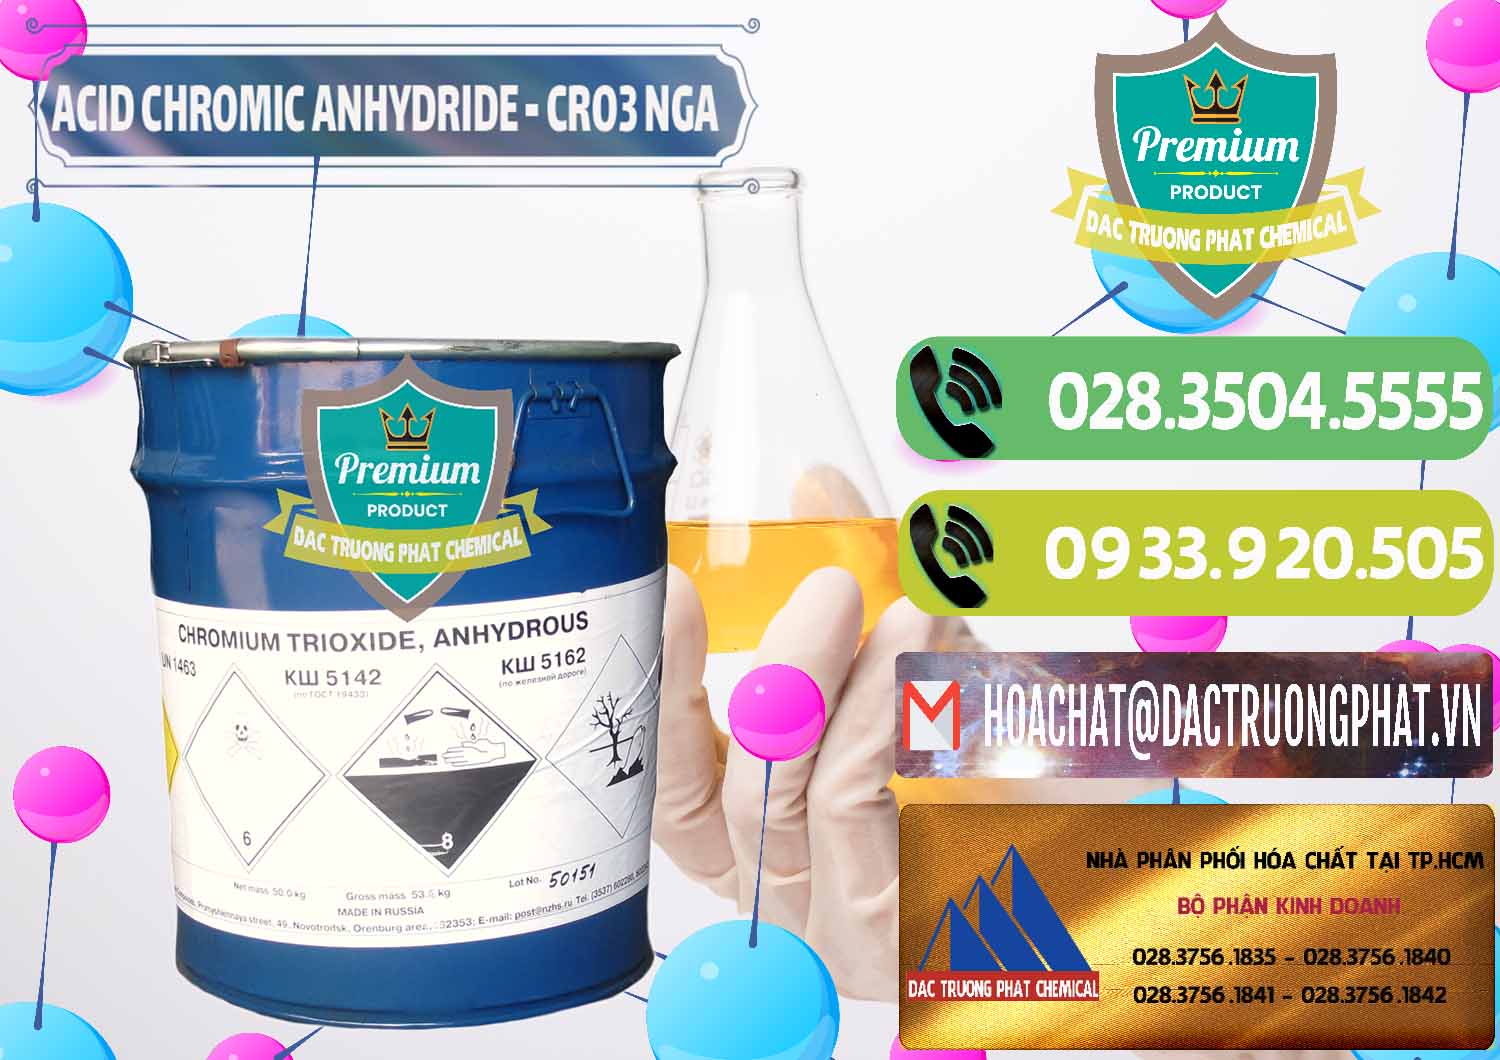 Cty chuyên nhập khẩu & bán Acid Chromic Anhydride - Cromic CRO3 Nga Russia - 0006 - Công ty bán và cung cấp hóa chất tại TP.HCM - hoachatmientay.vn